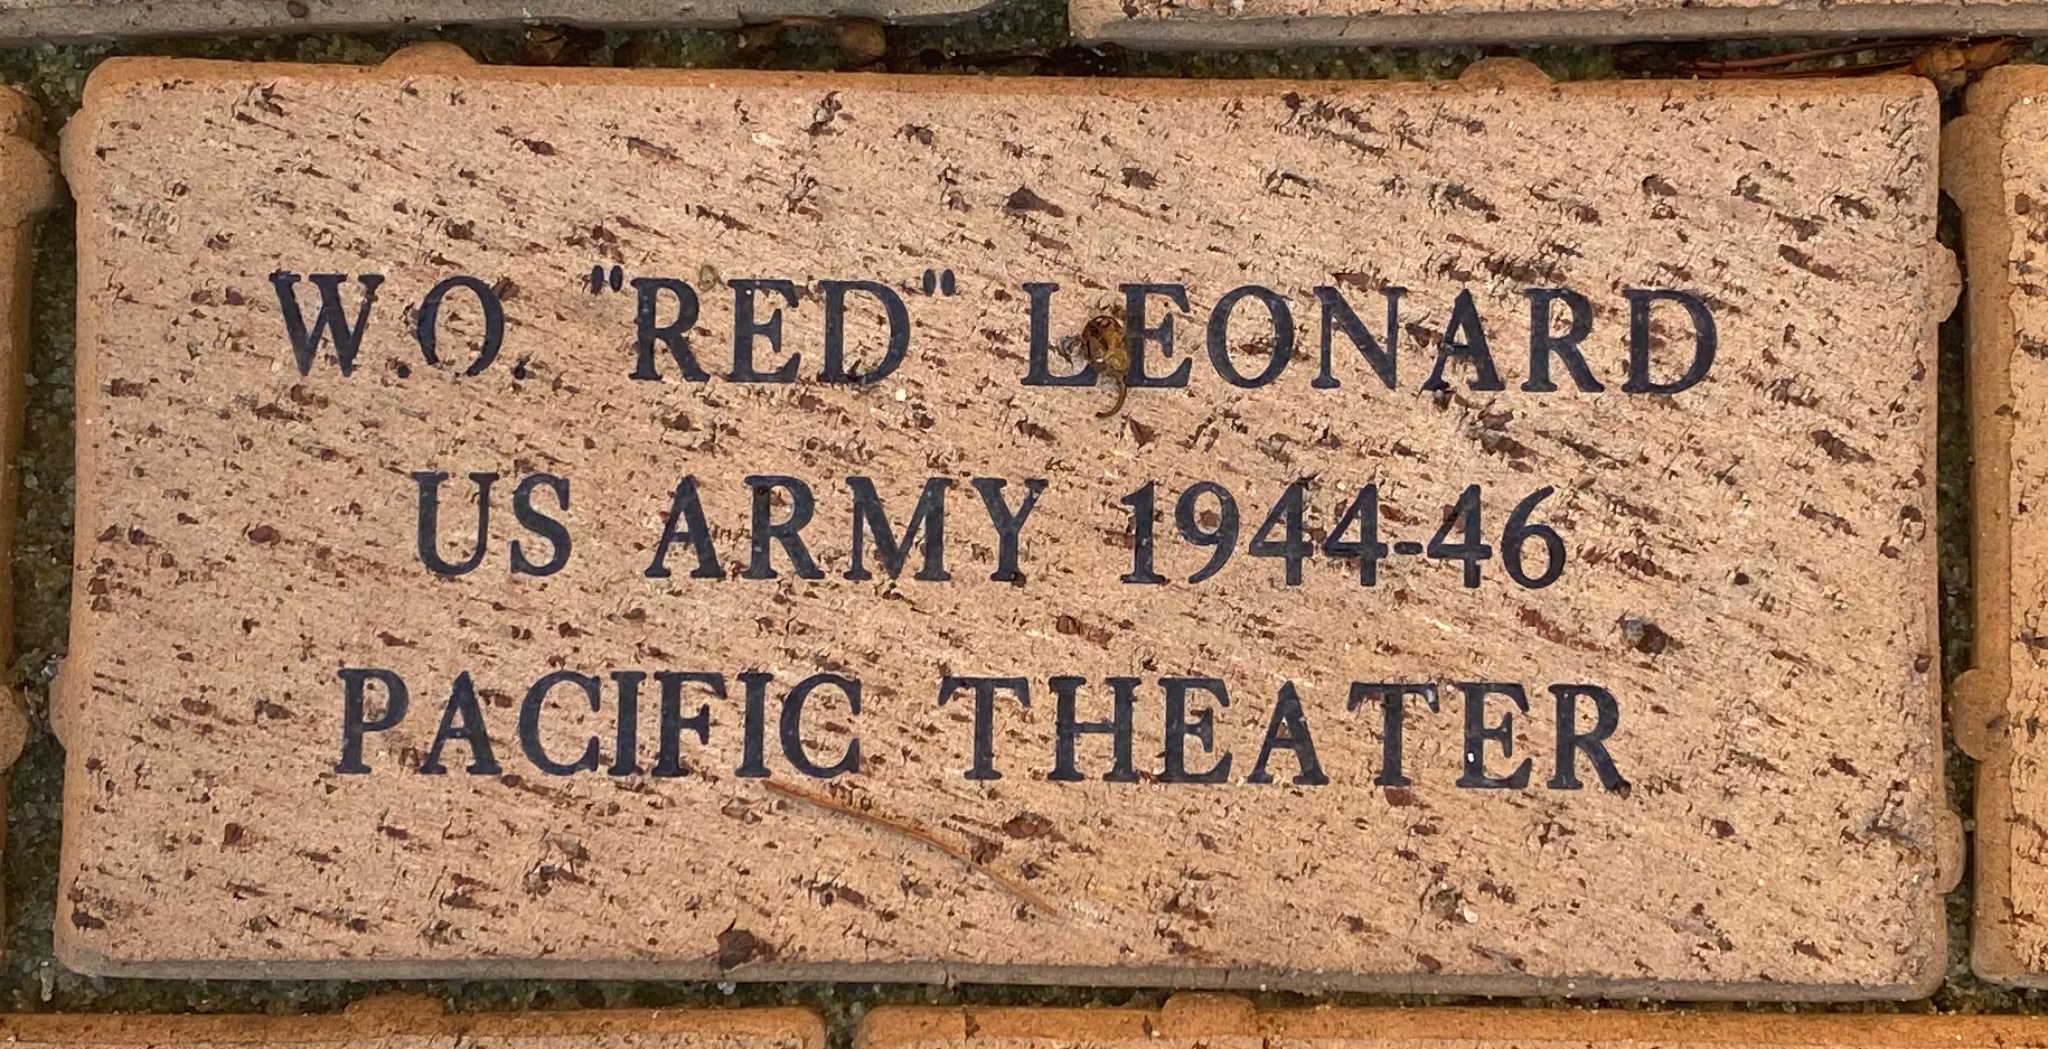 W.O. ”RED” LEONARD US ARMY 1944- 46 PACIFIC THEATER